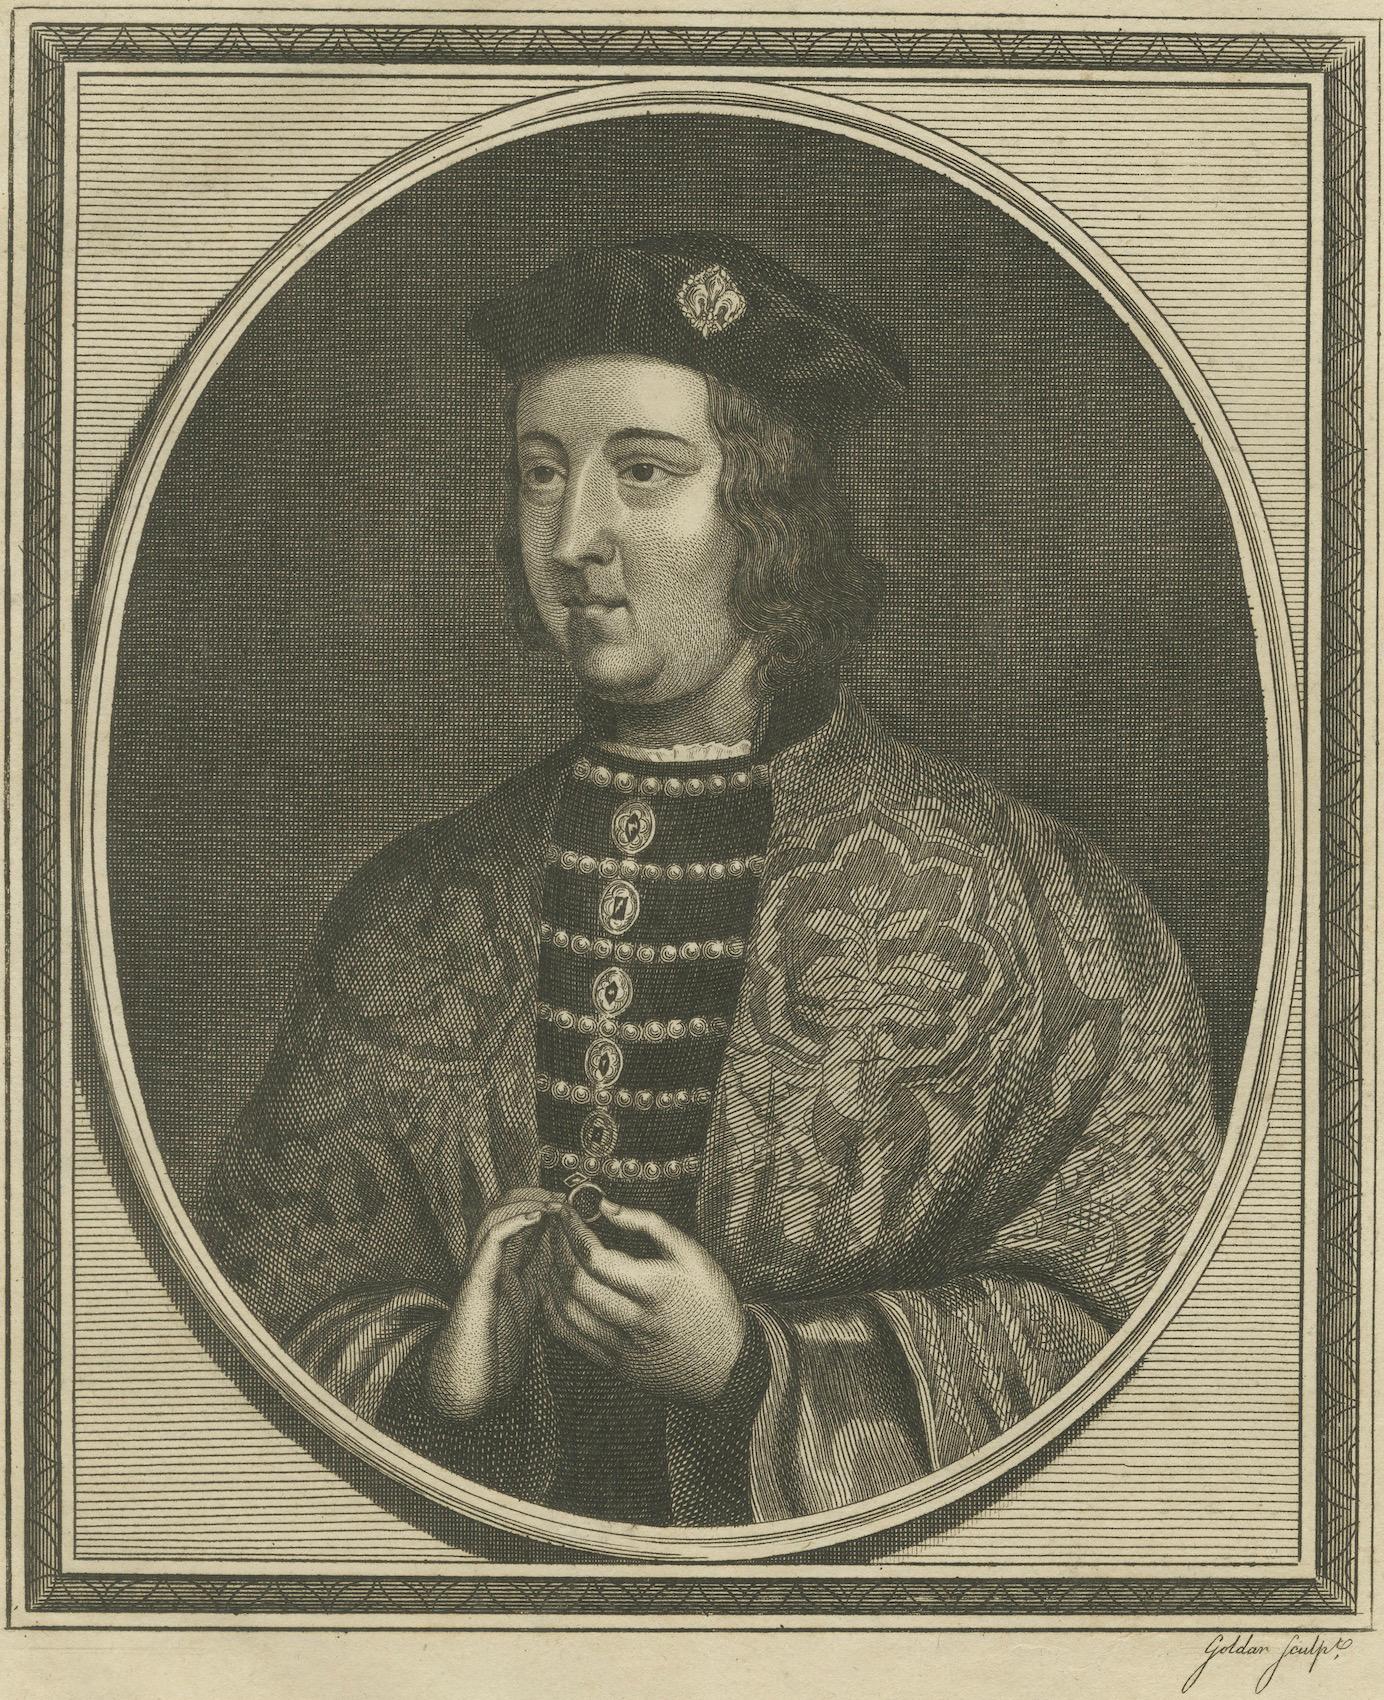 Paper Elegant 1786 Engraved Portrait of King Edward IV - Royal Majesty For Sale